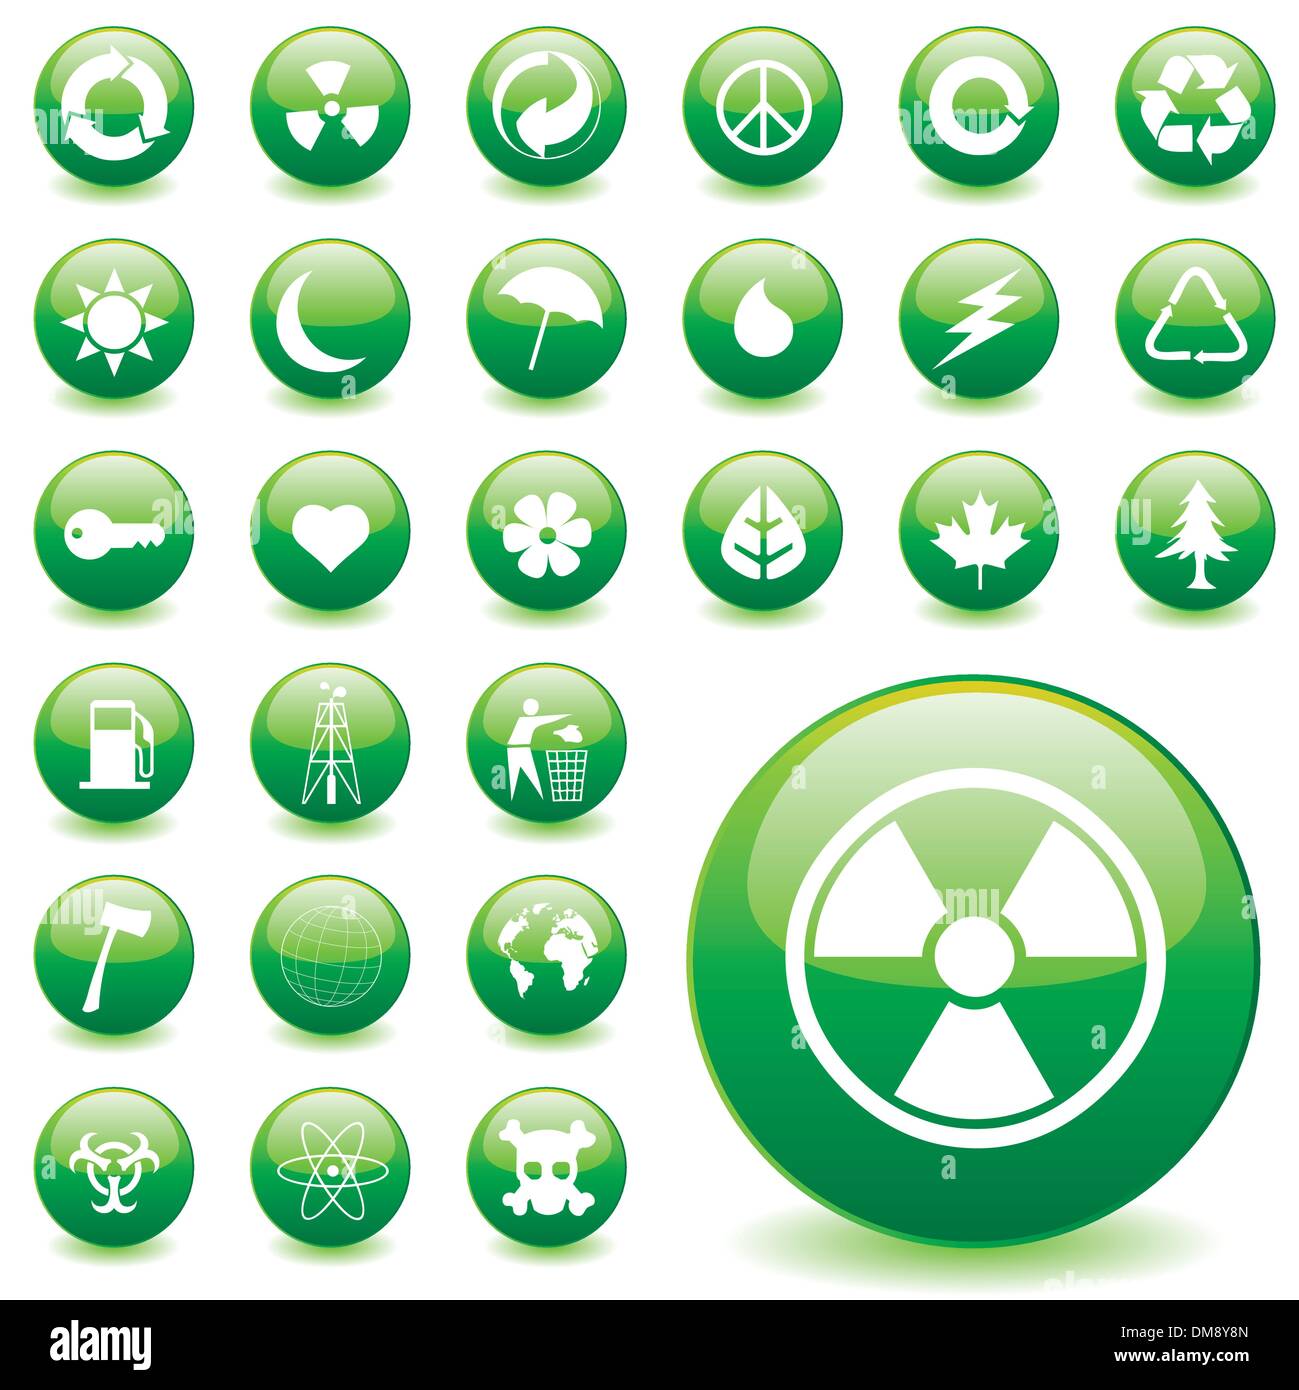 environmental icons Stock Vector